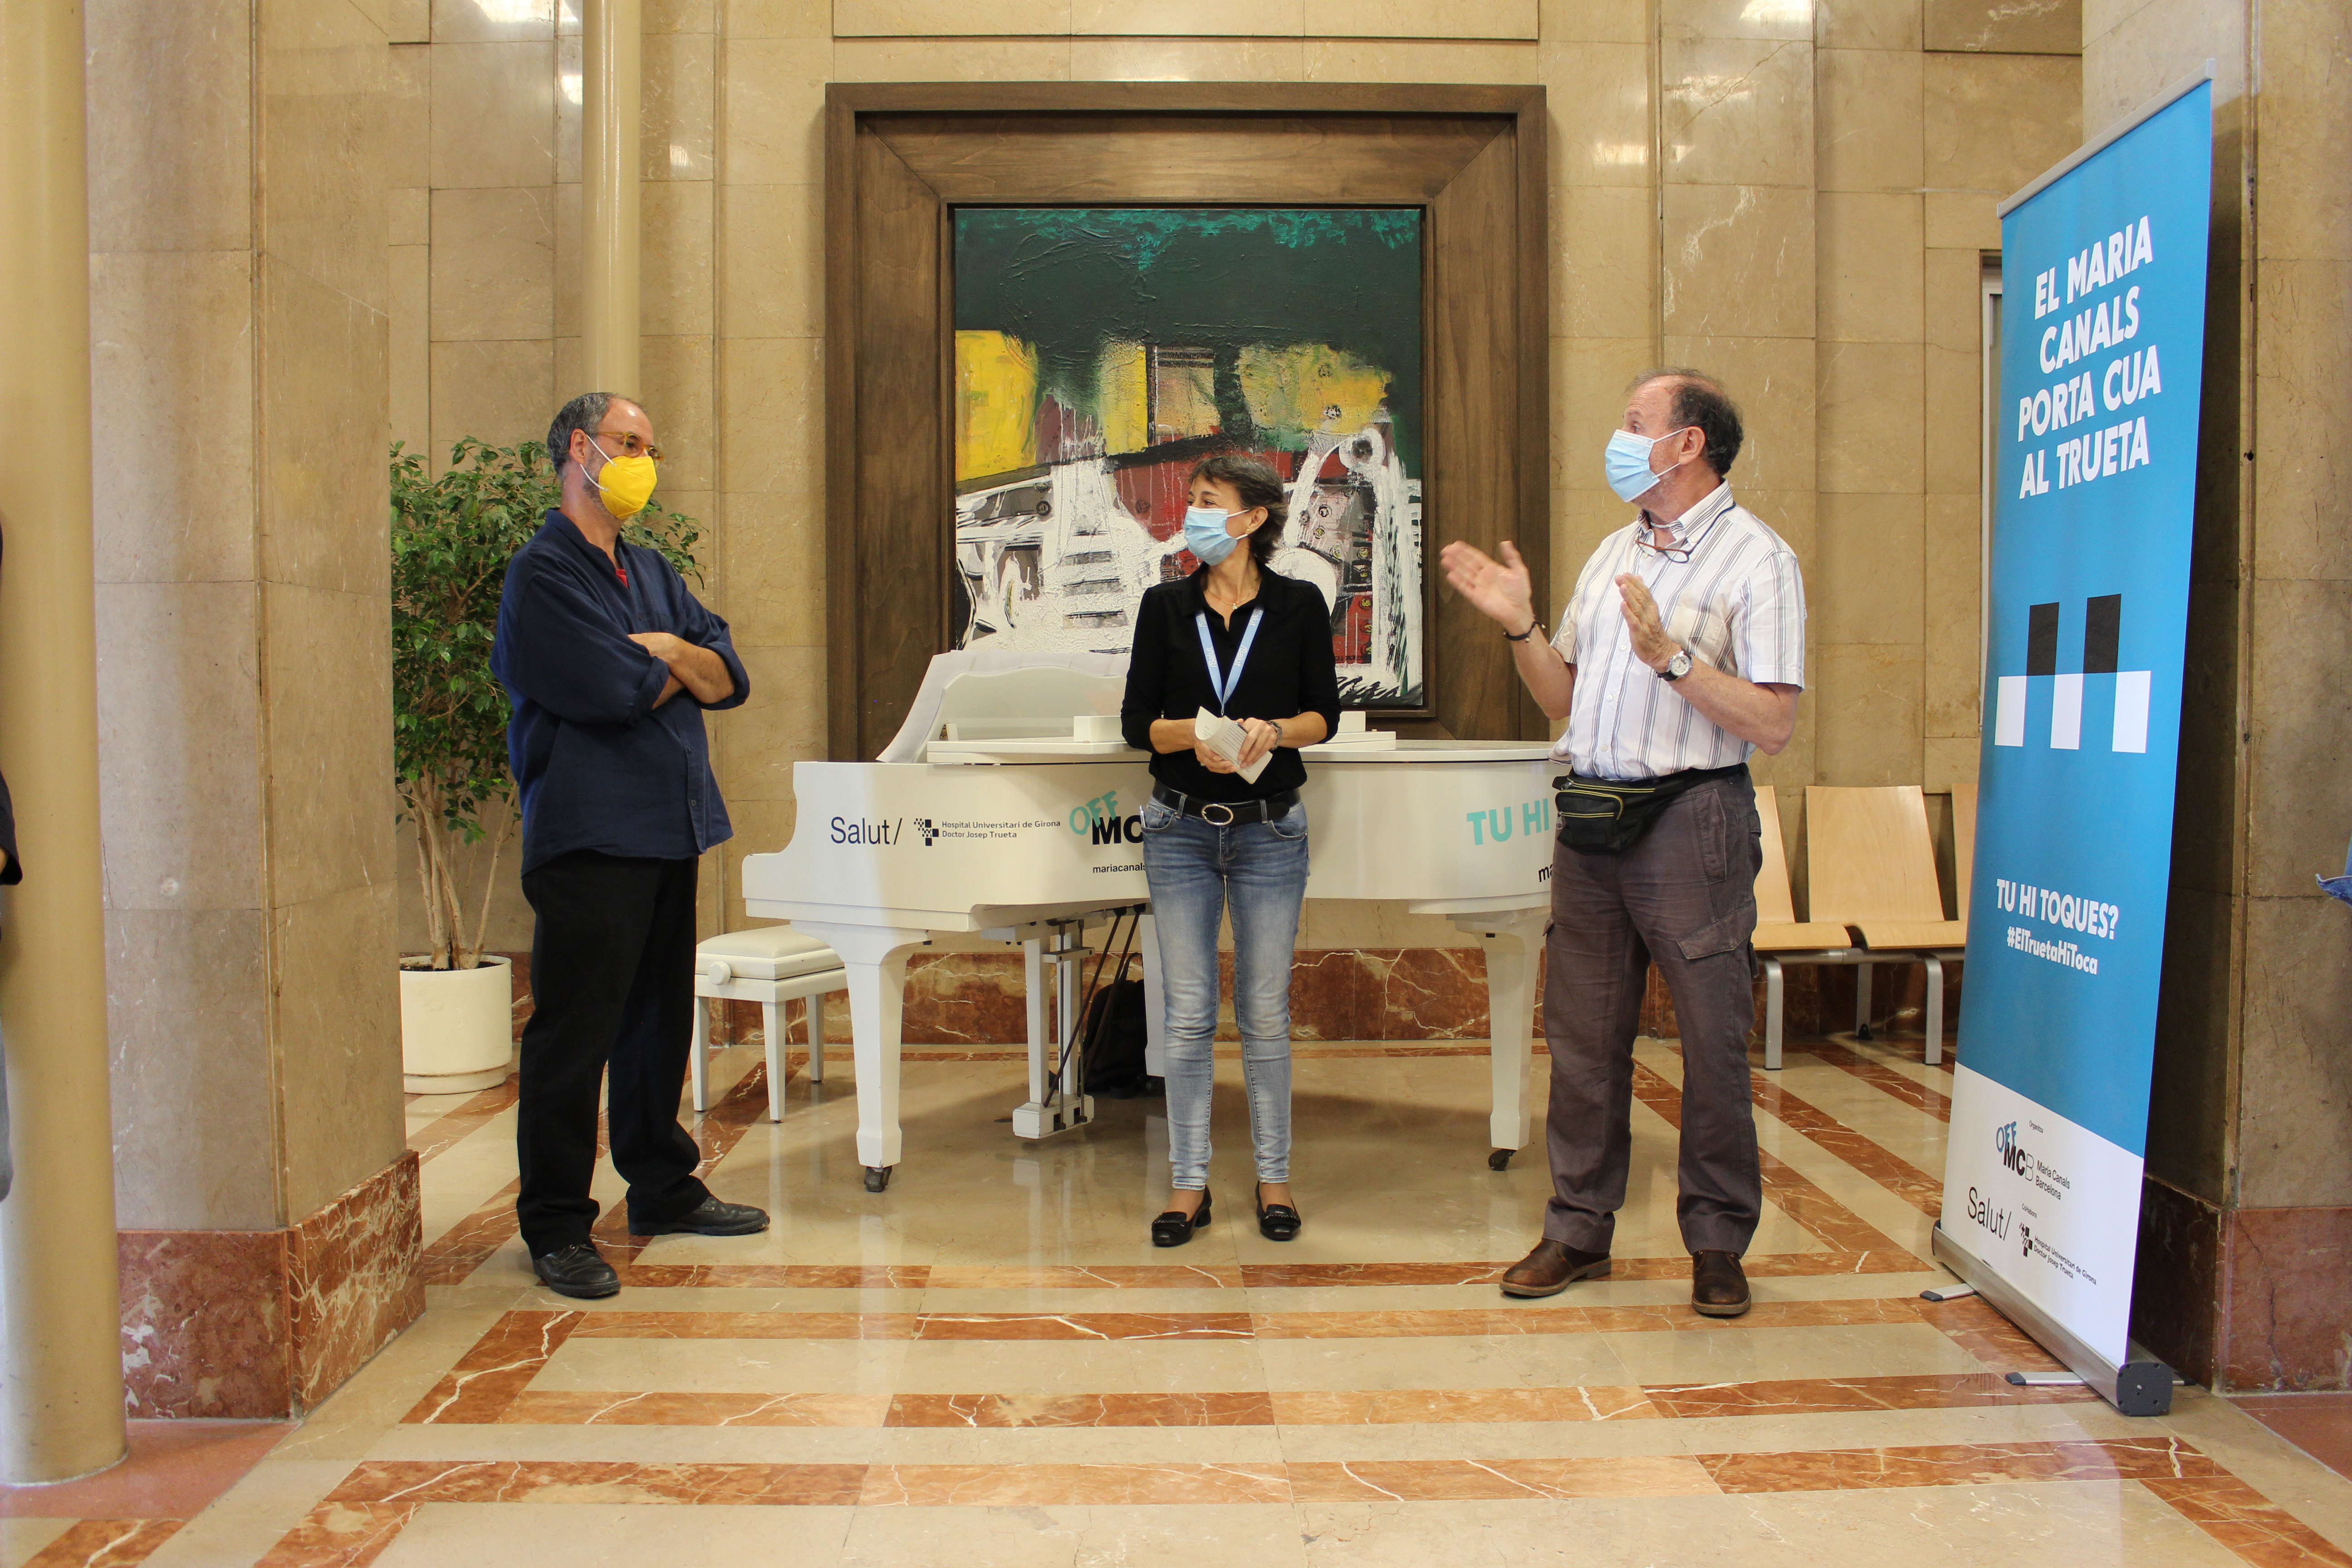 El fotògraf Tino Soriano, la directora de l'Hospital Trueta, Glòria Padura i el compositor Paco Viciana